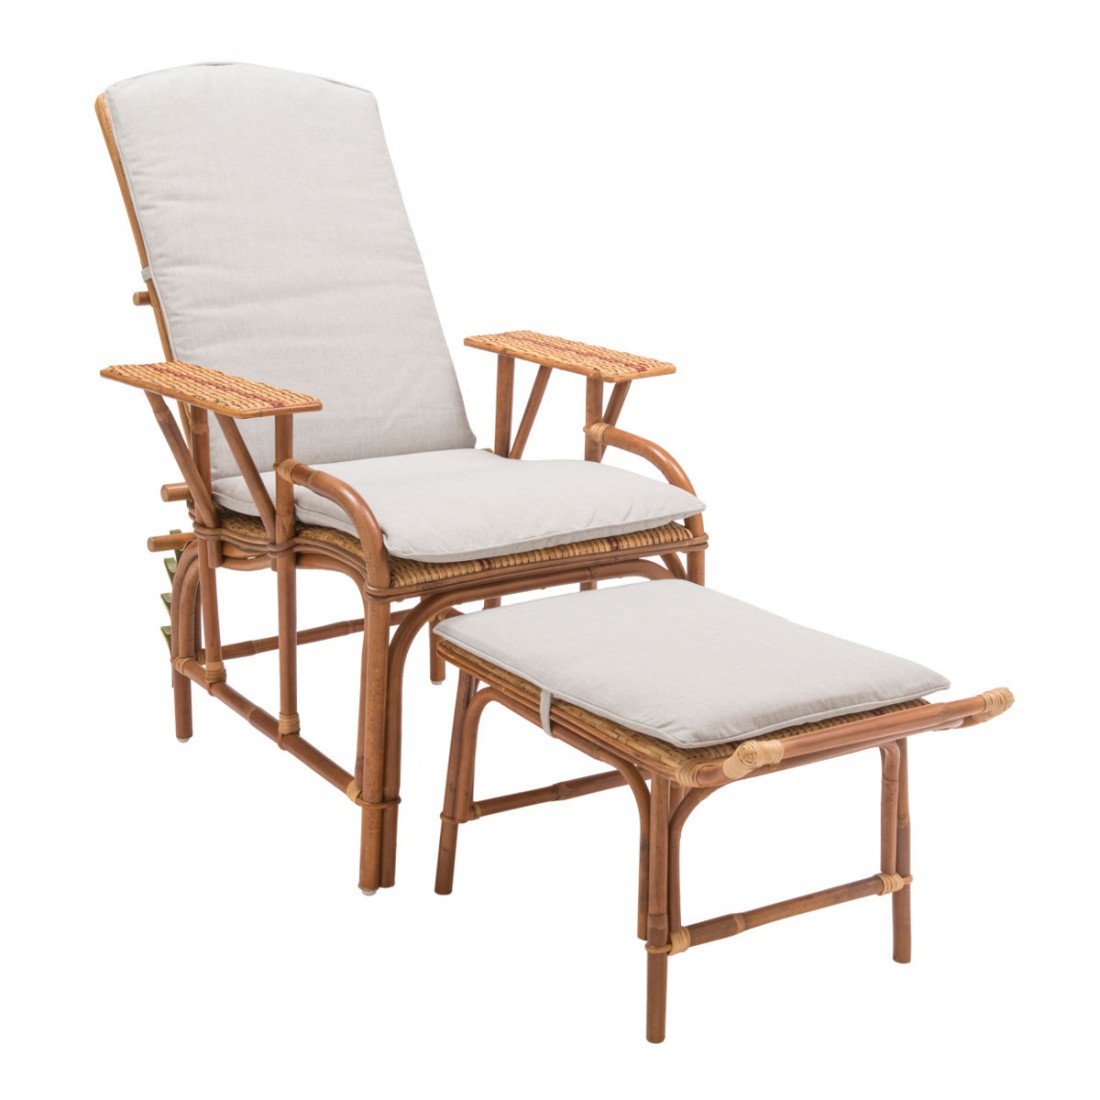 Coussin de chaise longue - Tropical - Pois de senteur